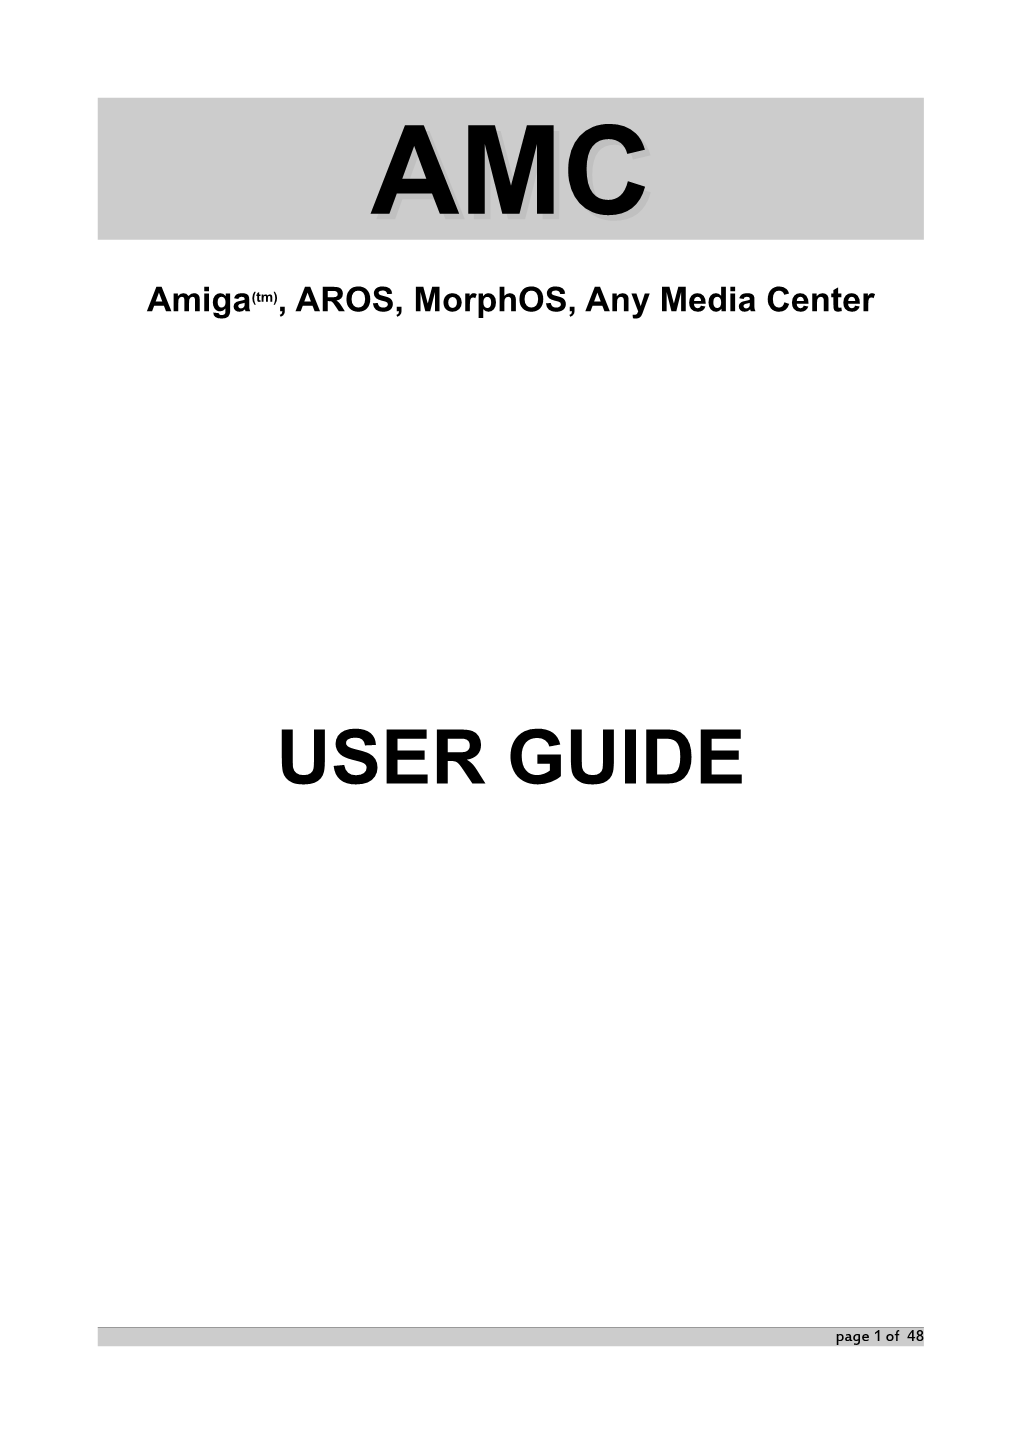 AMC Official User Guide